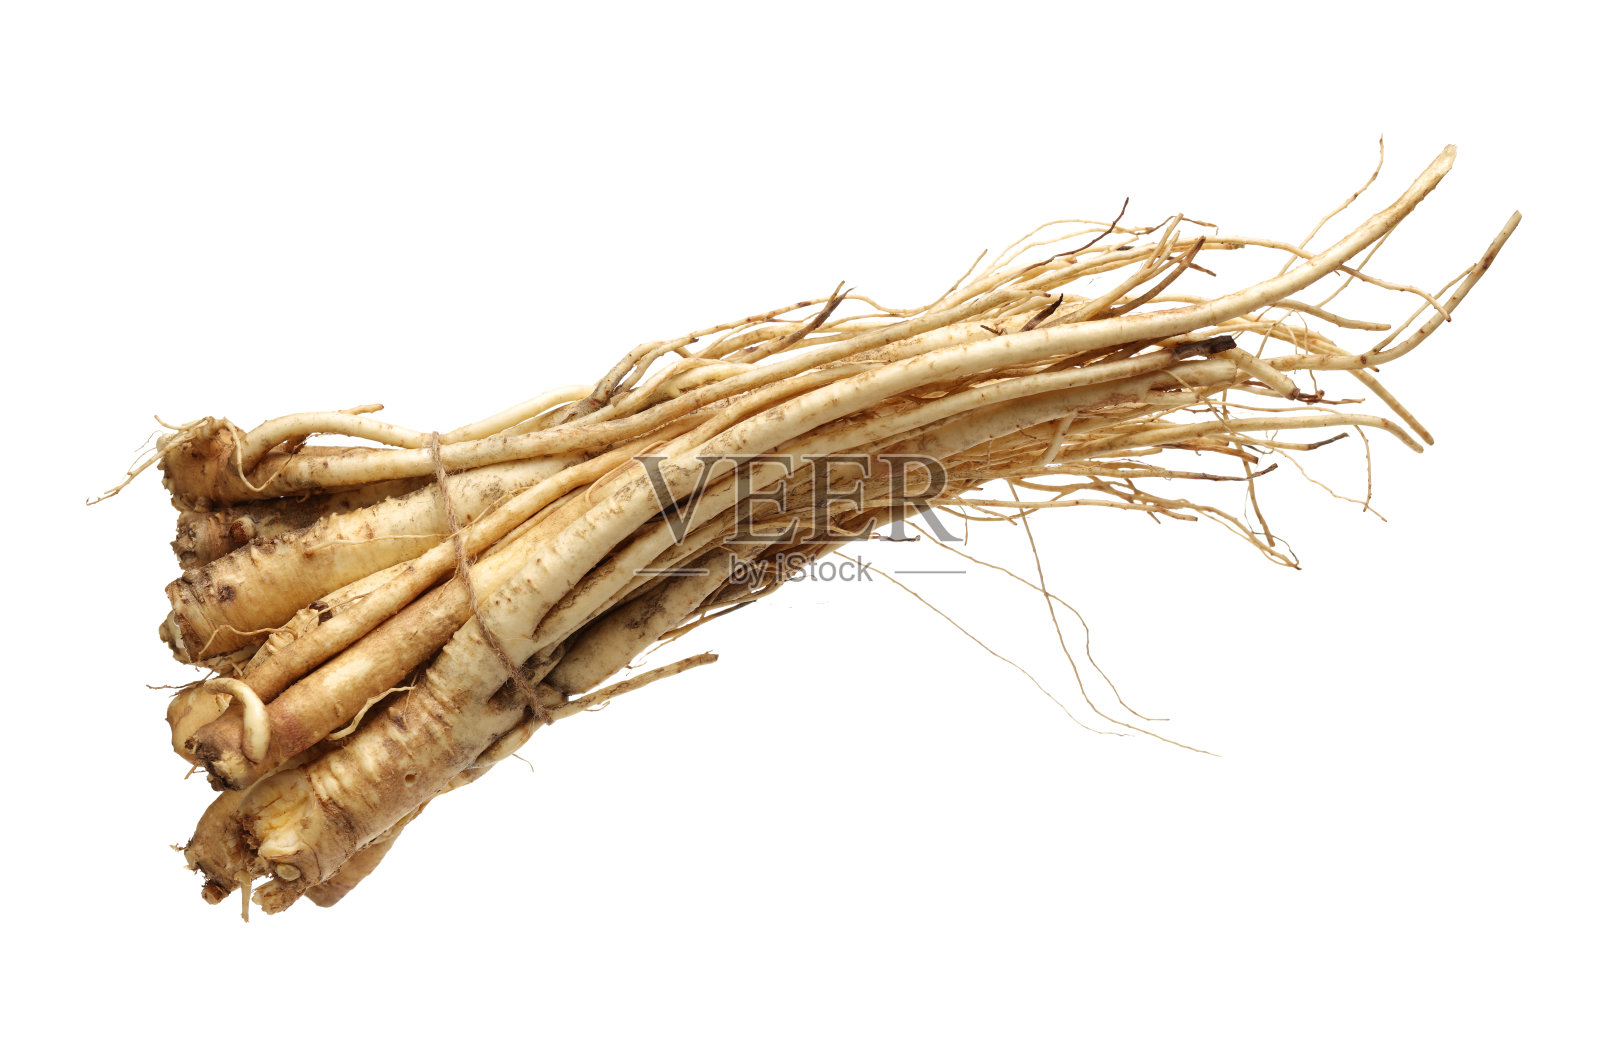 桔梗:韩国风铃花(桔梗)的根，俗称多拉戟，孤立于白色背景上。在韩国流行的蔬菜，也用于中药照片摄影图片